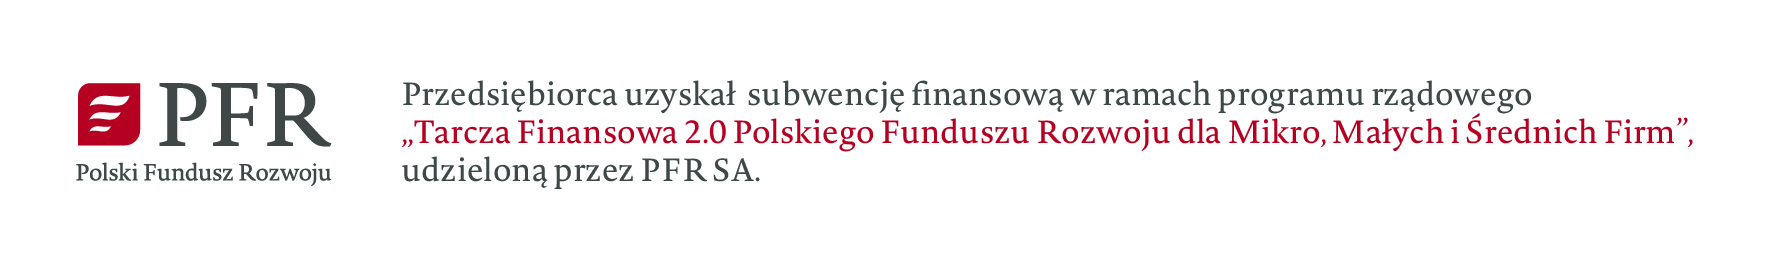 Przedsiębiorca uzyskał subwencję finansową w ramach programu rządowego -Tarcza Finansowa 2.0 Polskiego Funduszu Rozwoju dla Mikro, Małych i Średnich firm-, udzieloną przez PFR SA.